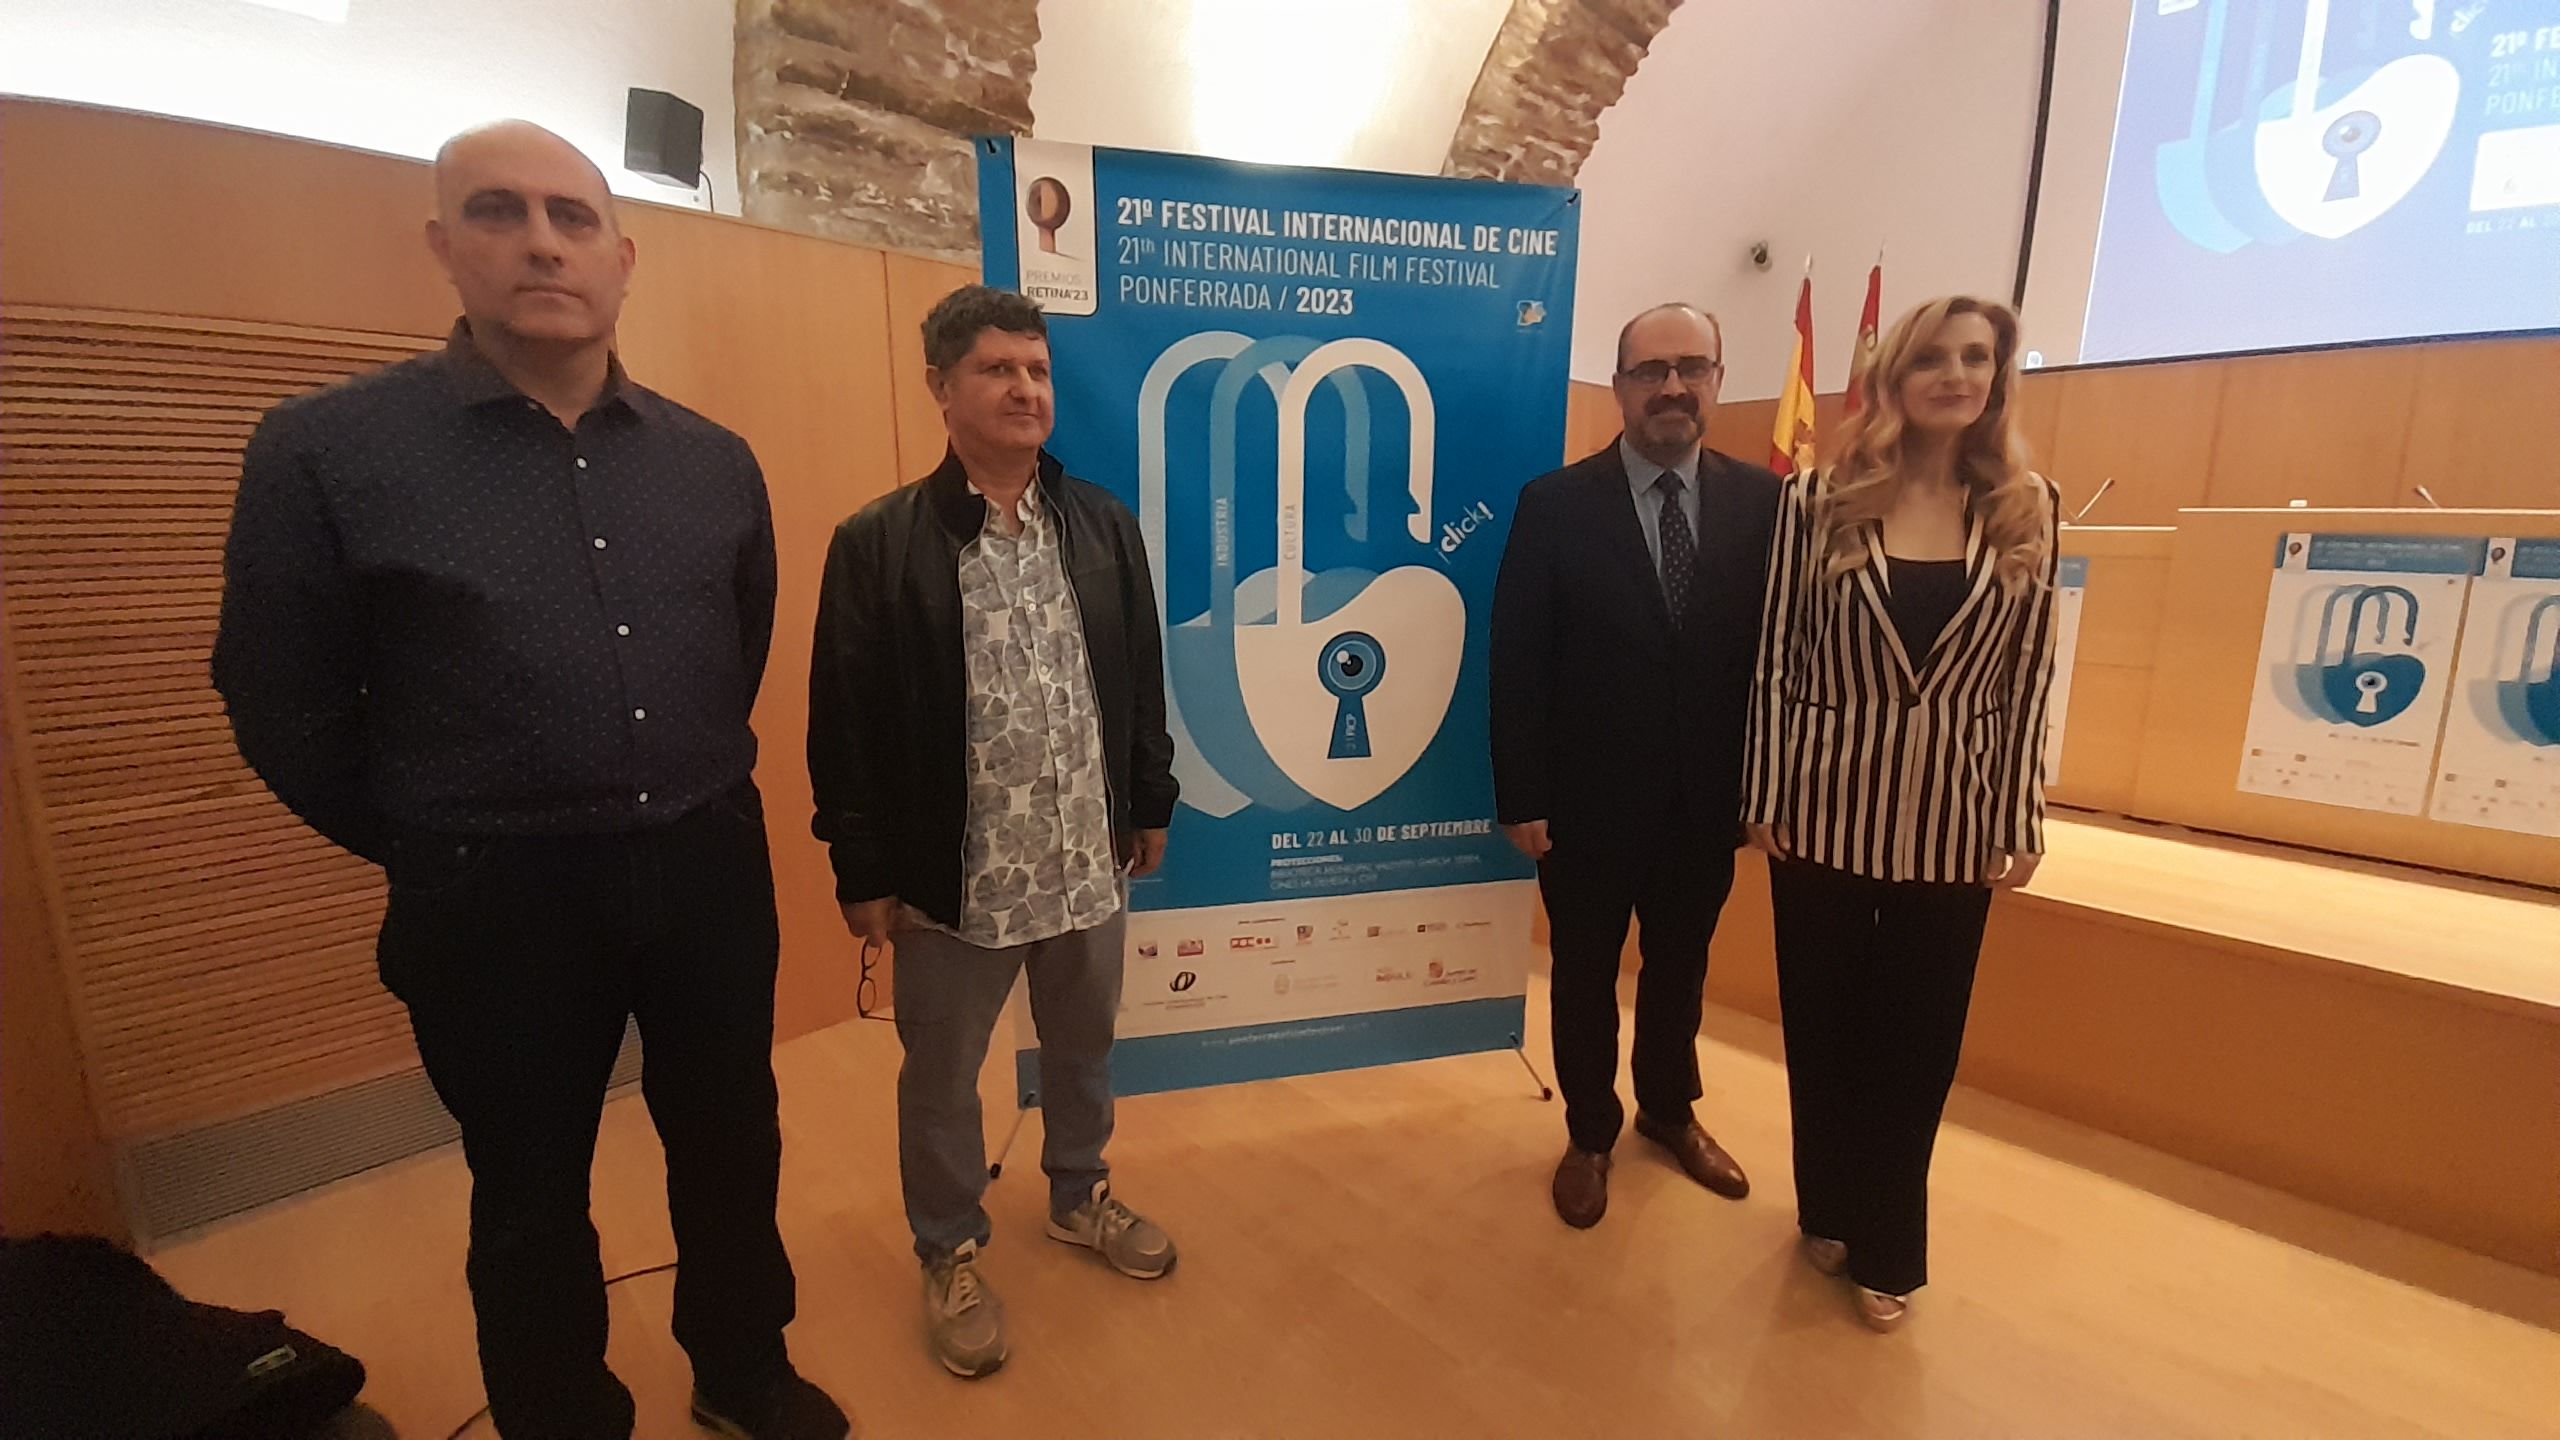 Mar Sancho apadrinó la presentación de la 21 edición del Festival Internacional de Cine en Ponferrada. | MAR IGLESIAS